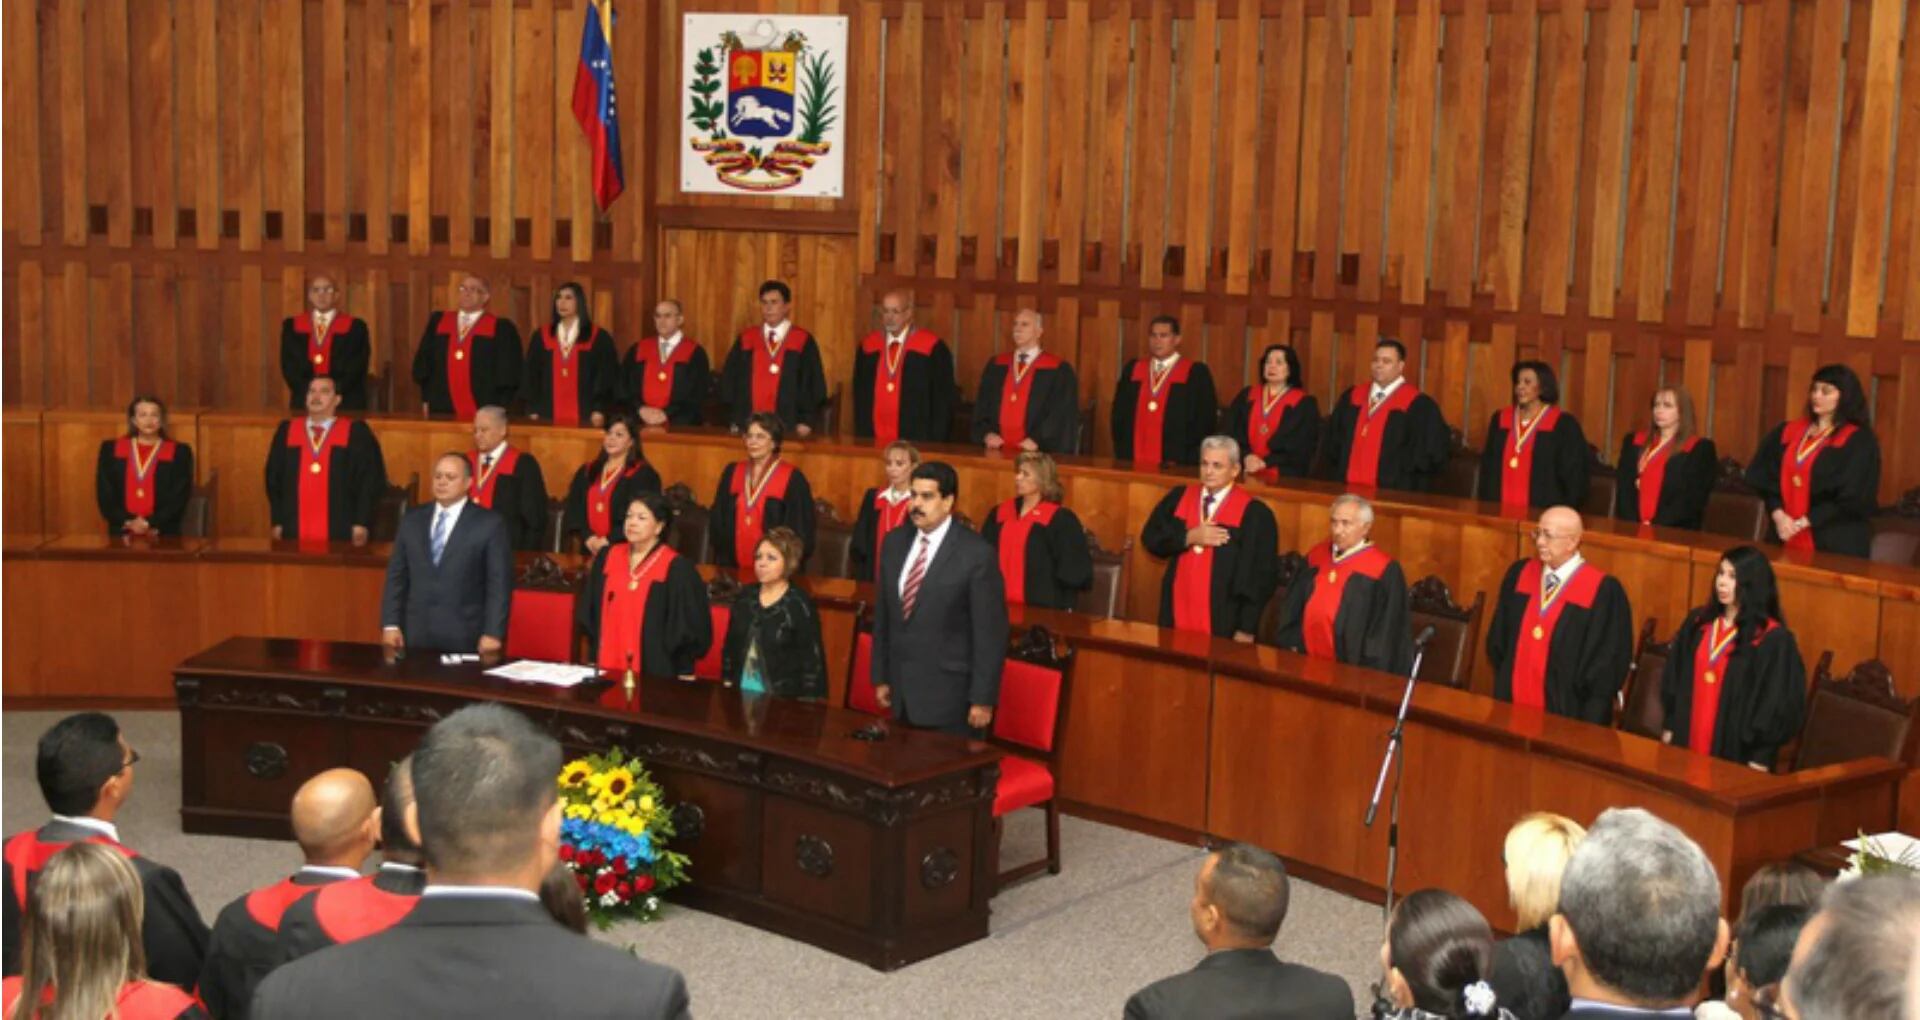 Tribunal Supremo de Justicia de Venezuela.